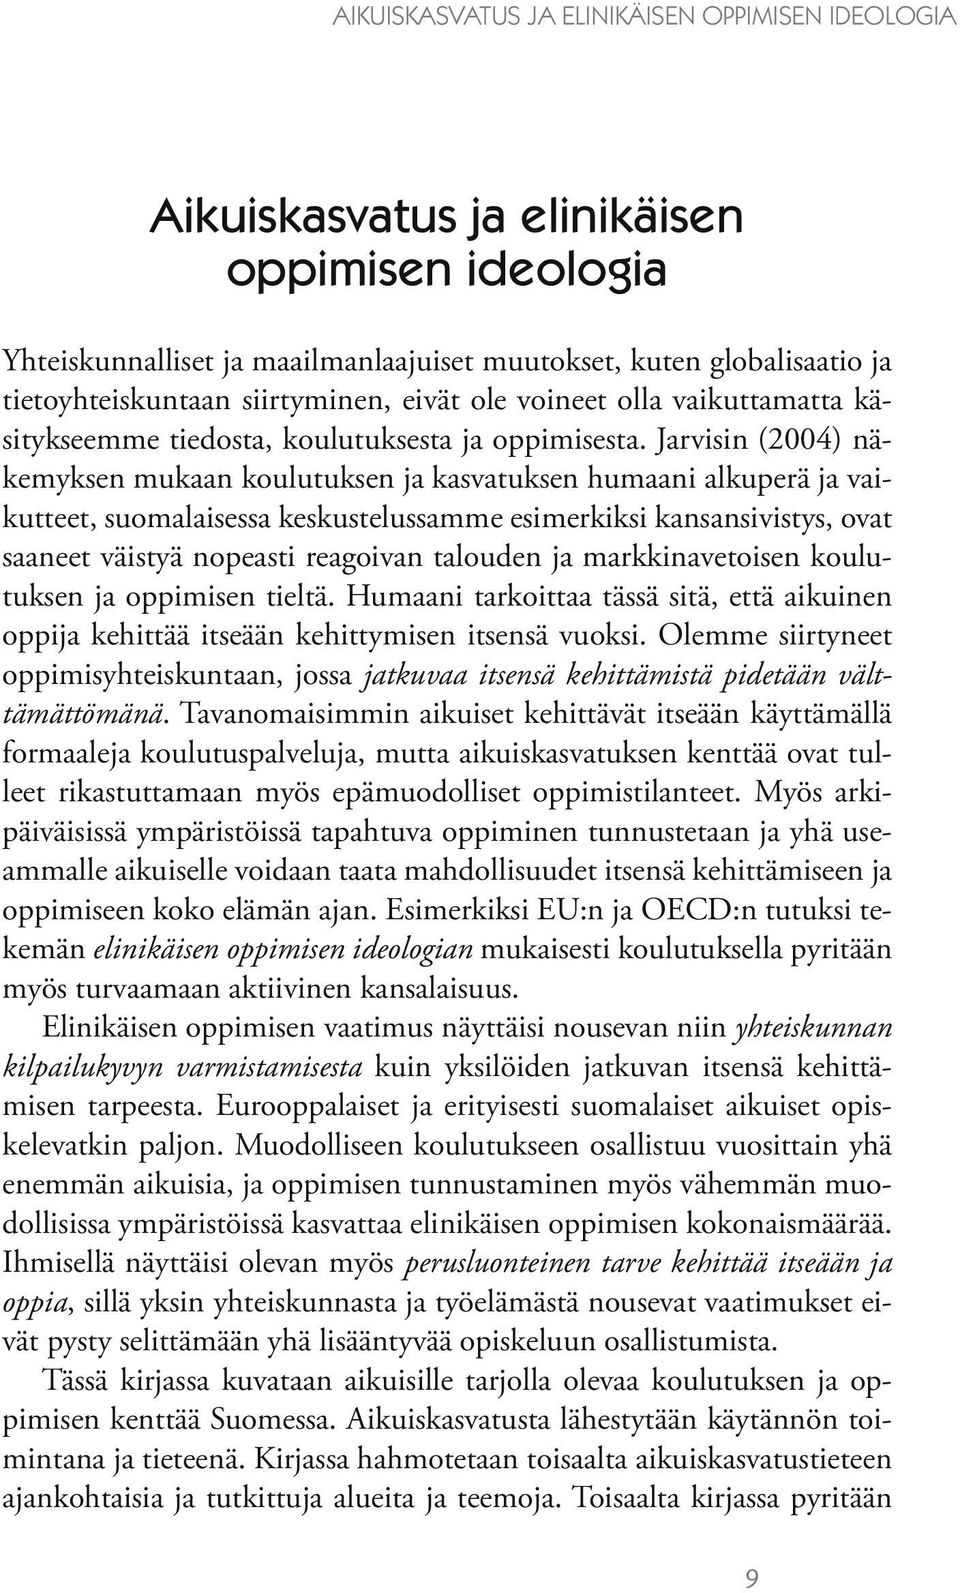 Jarvisin (2004) näkemyksen mukaan koulutuksen ja kasvatuksen humaani alkuperä ja vaikutteet, suomalaisessa keskustelussamme esimerkiksi kansansivistys, ovat saaneet väistyä nopeasti reagoivan